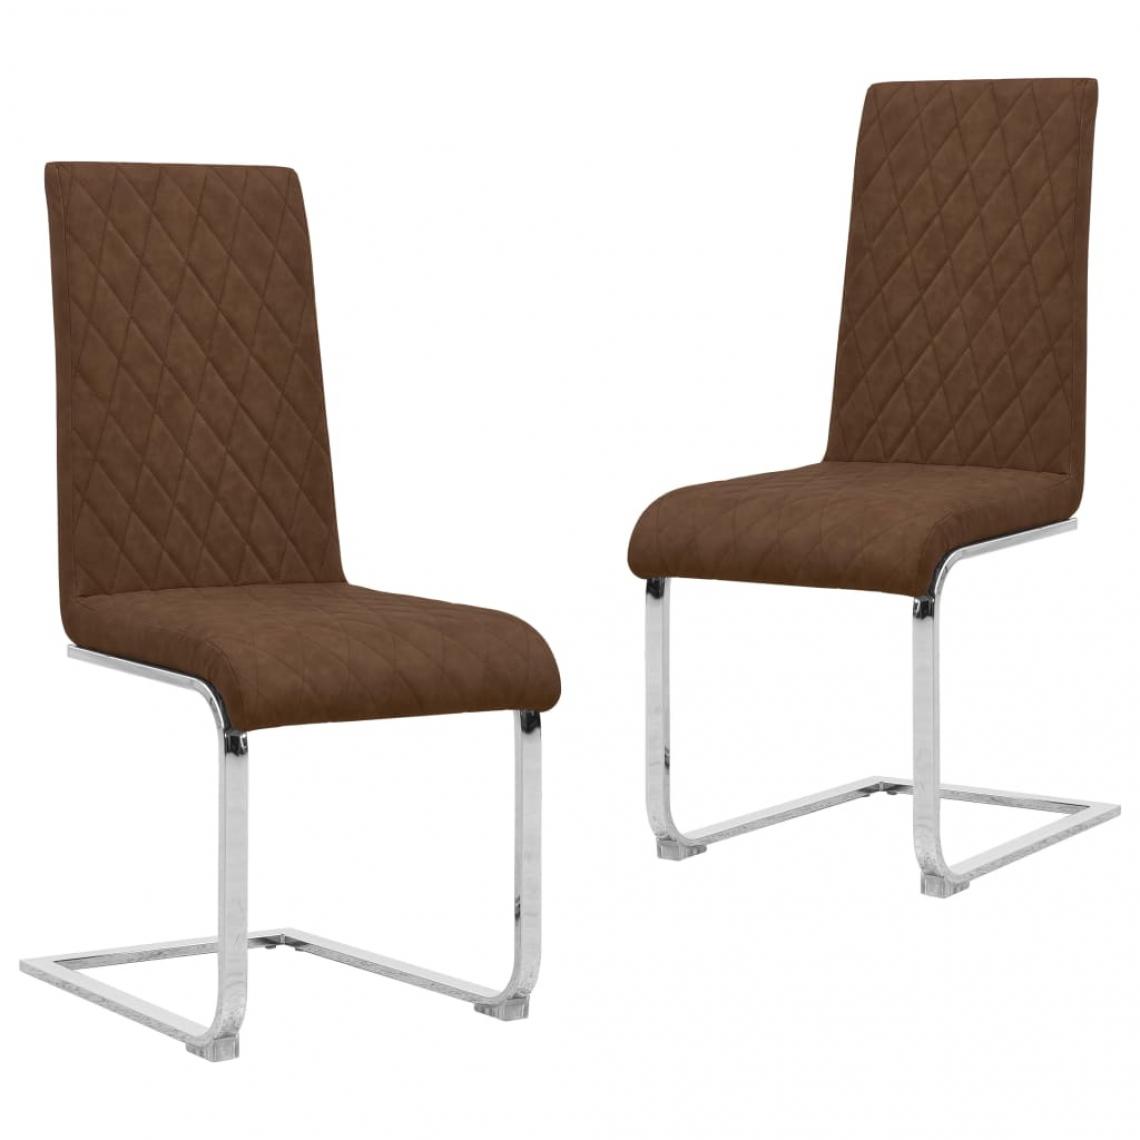 Decoshop26 - Lot de 2 chaises de salle à manger cuisine cantilever design élégant similicuir marron CDS020361 - Chaises